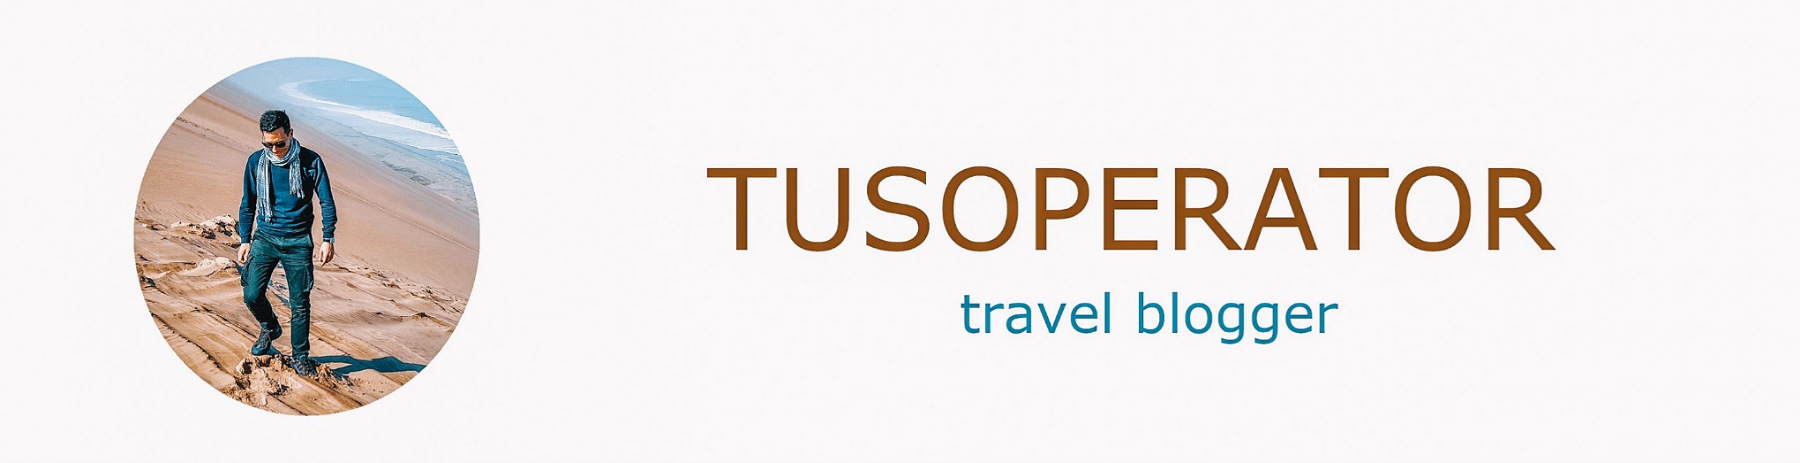 Tusoperator - Il mio blog di viaggi, gite fuori porta e piccole avventure